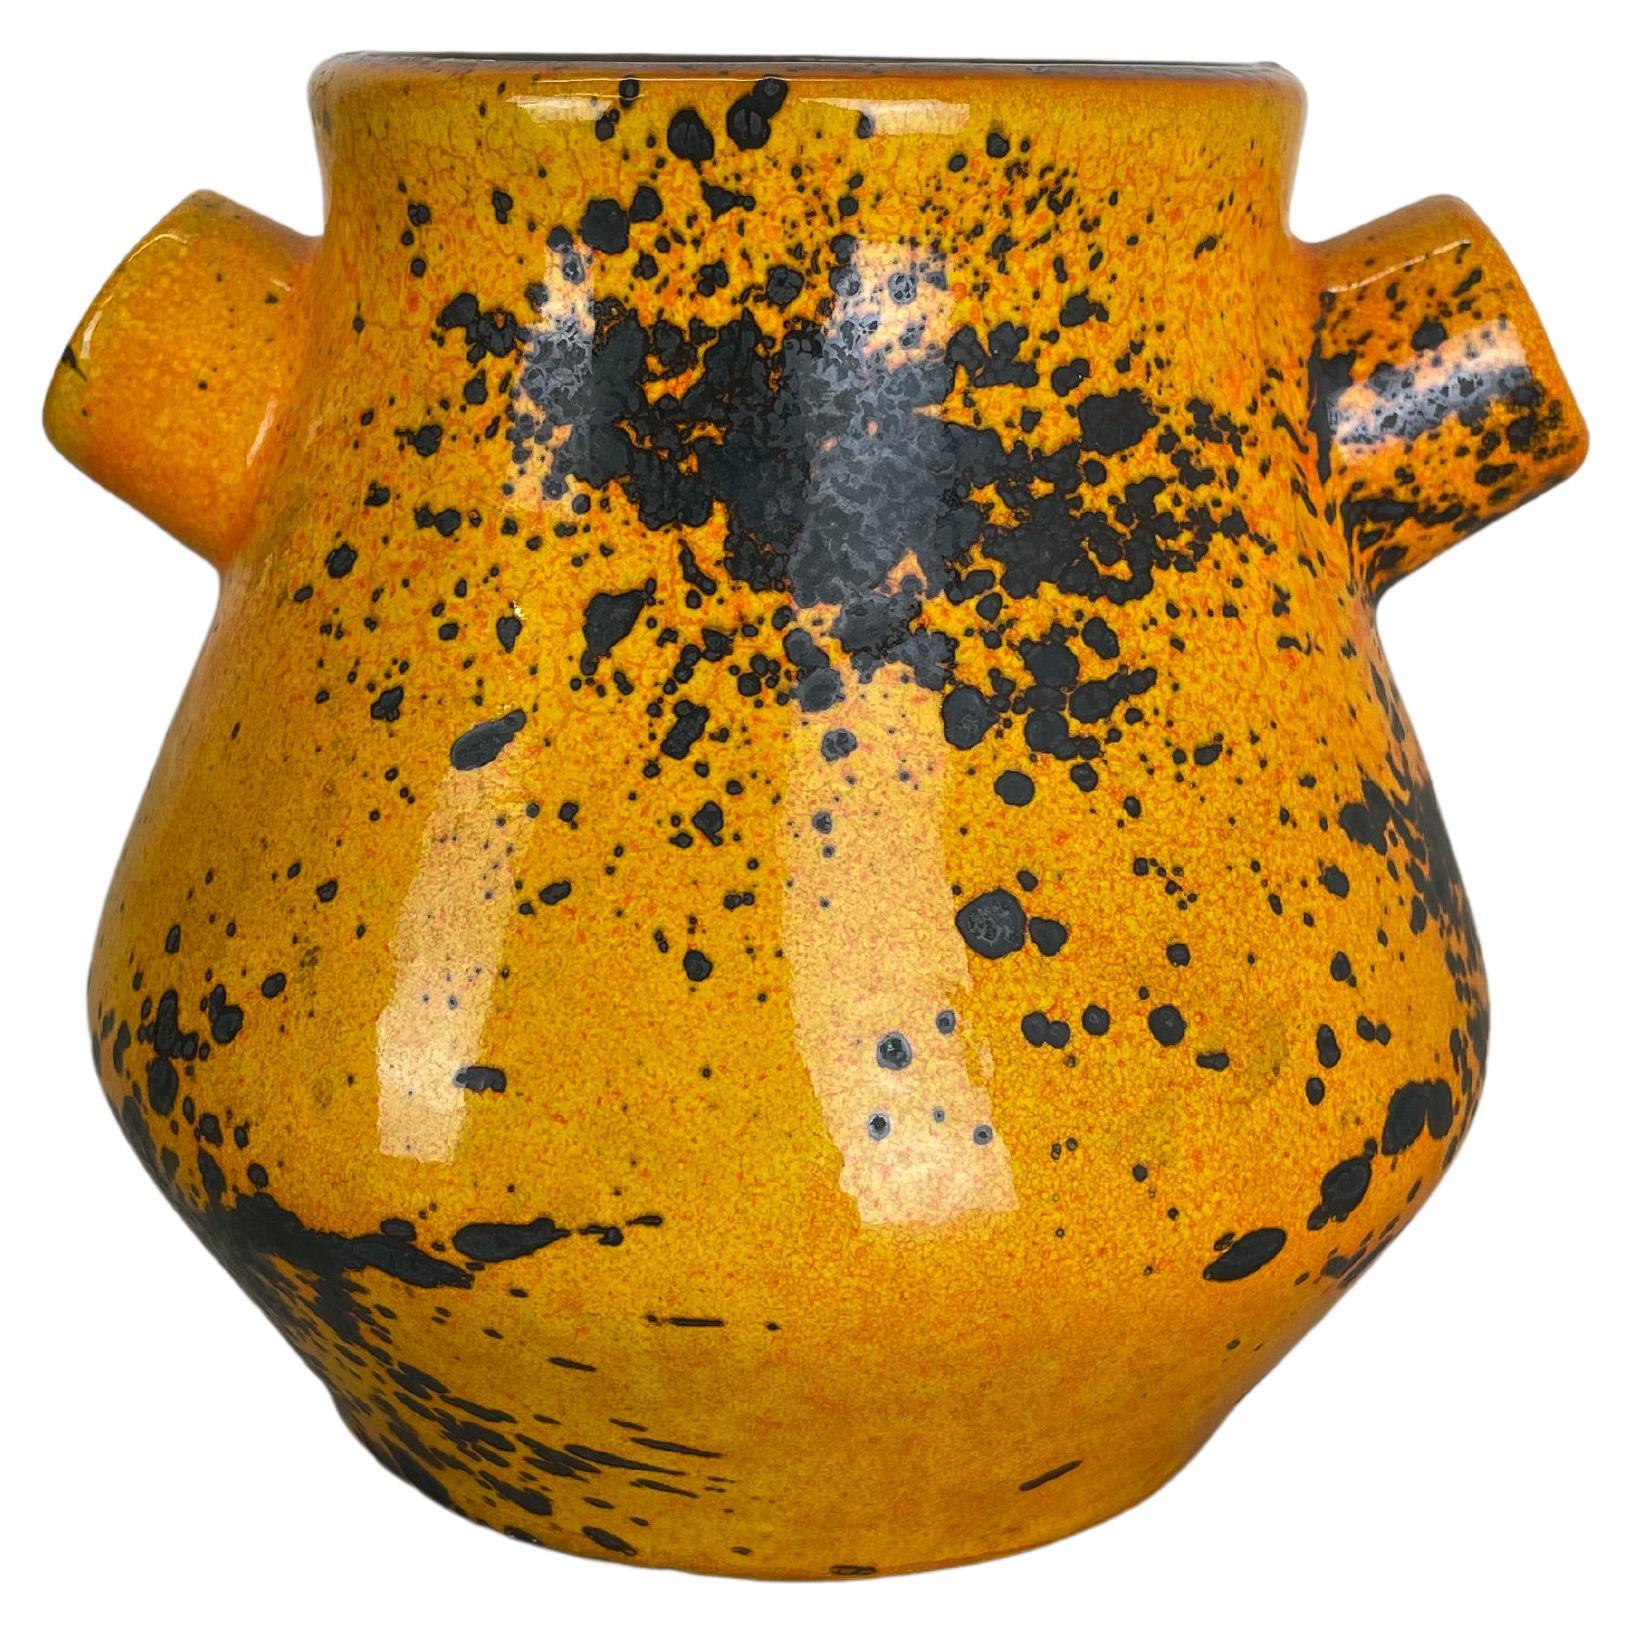 Original Orange Ceramic Studio Pottery Vase by Marei Ceramics